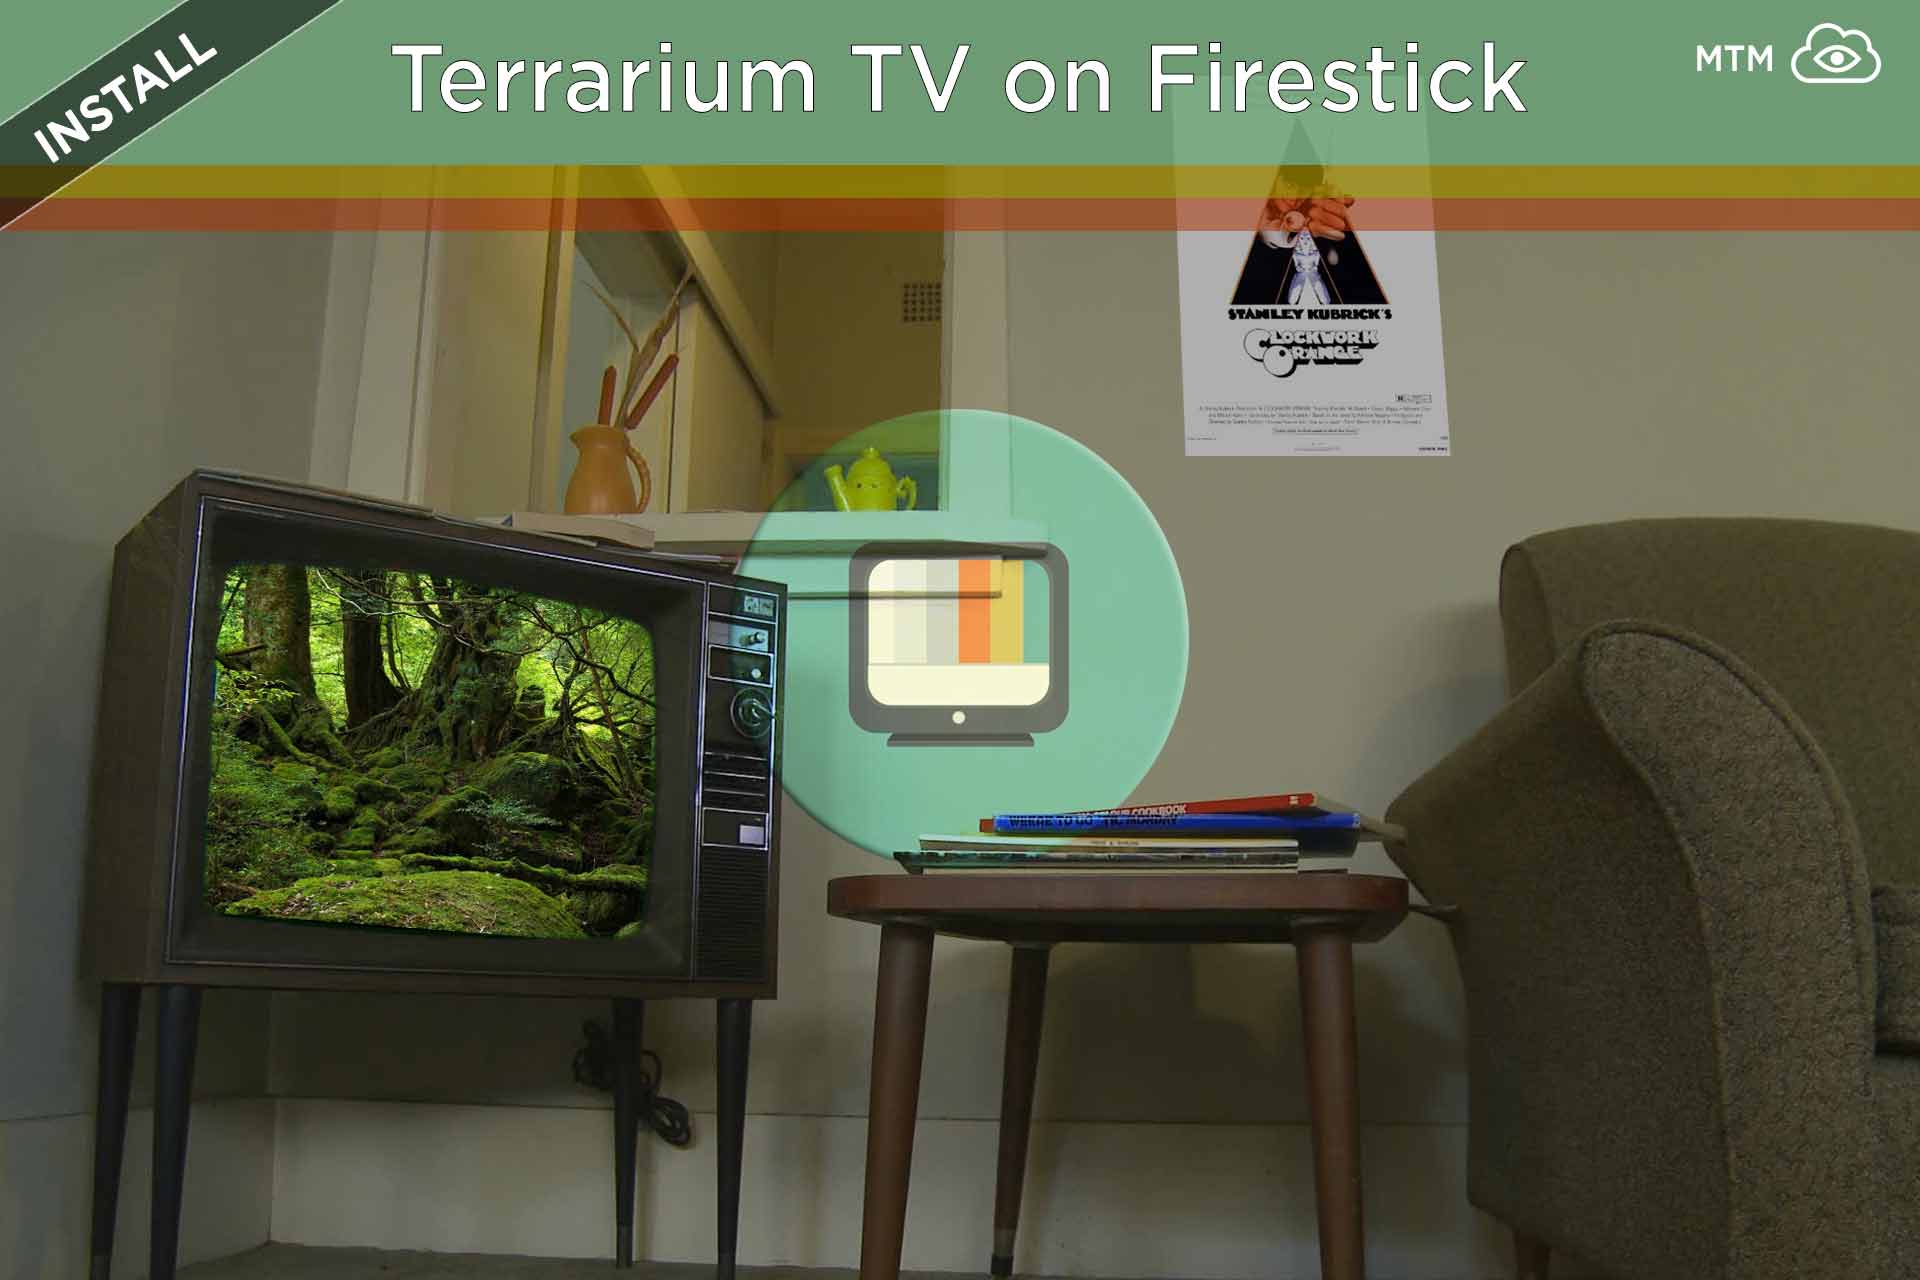 terrarium tv download movie on fire stivmck